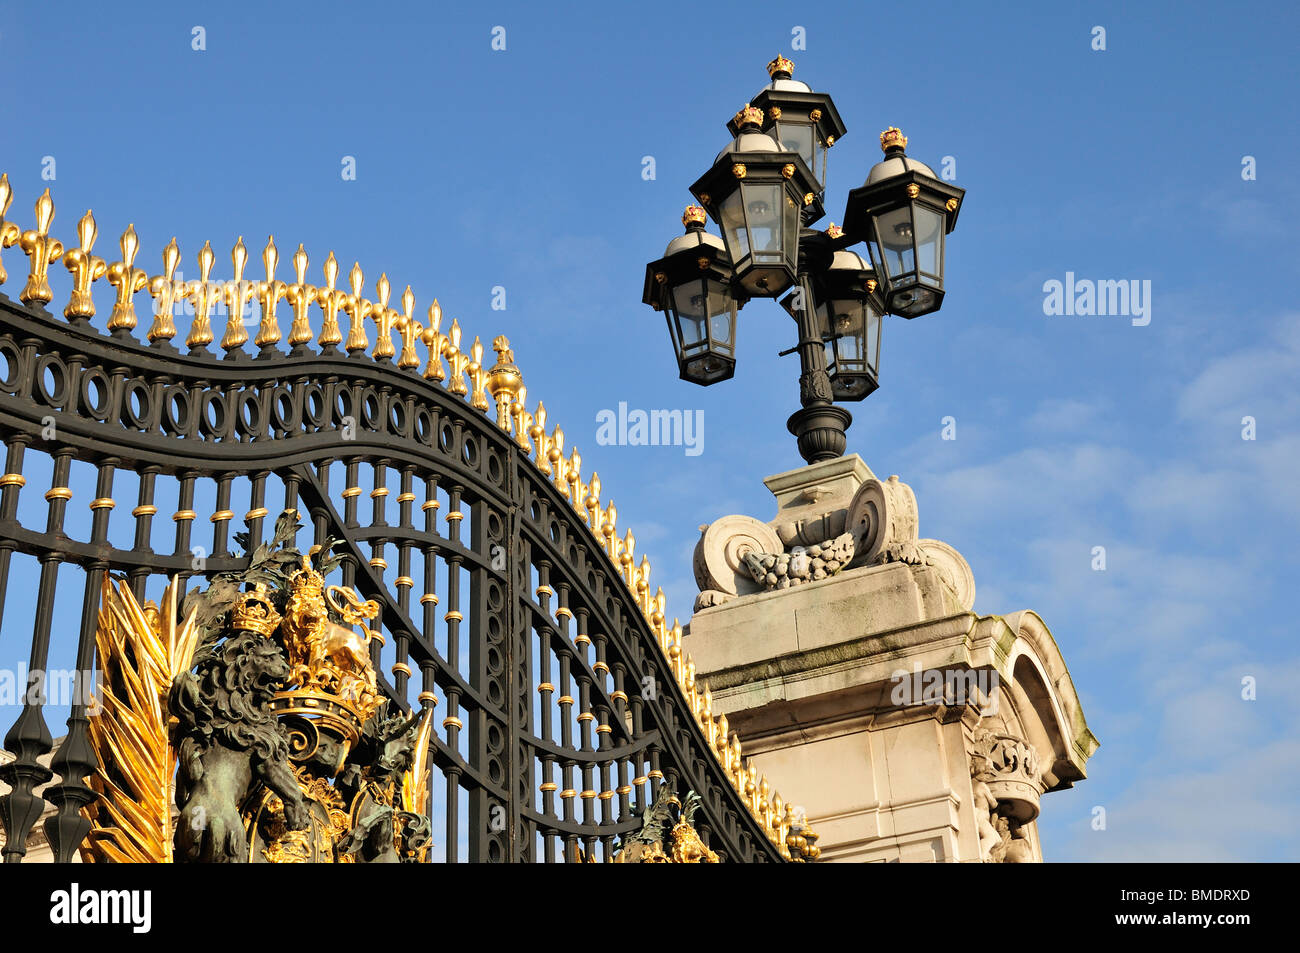 Buckingham Palace Gates, The Mall, London, United Kingdom Stock Photo